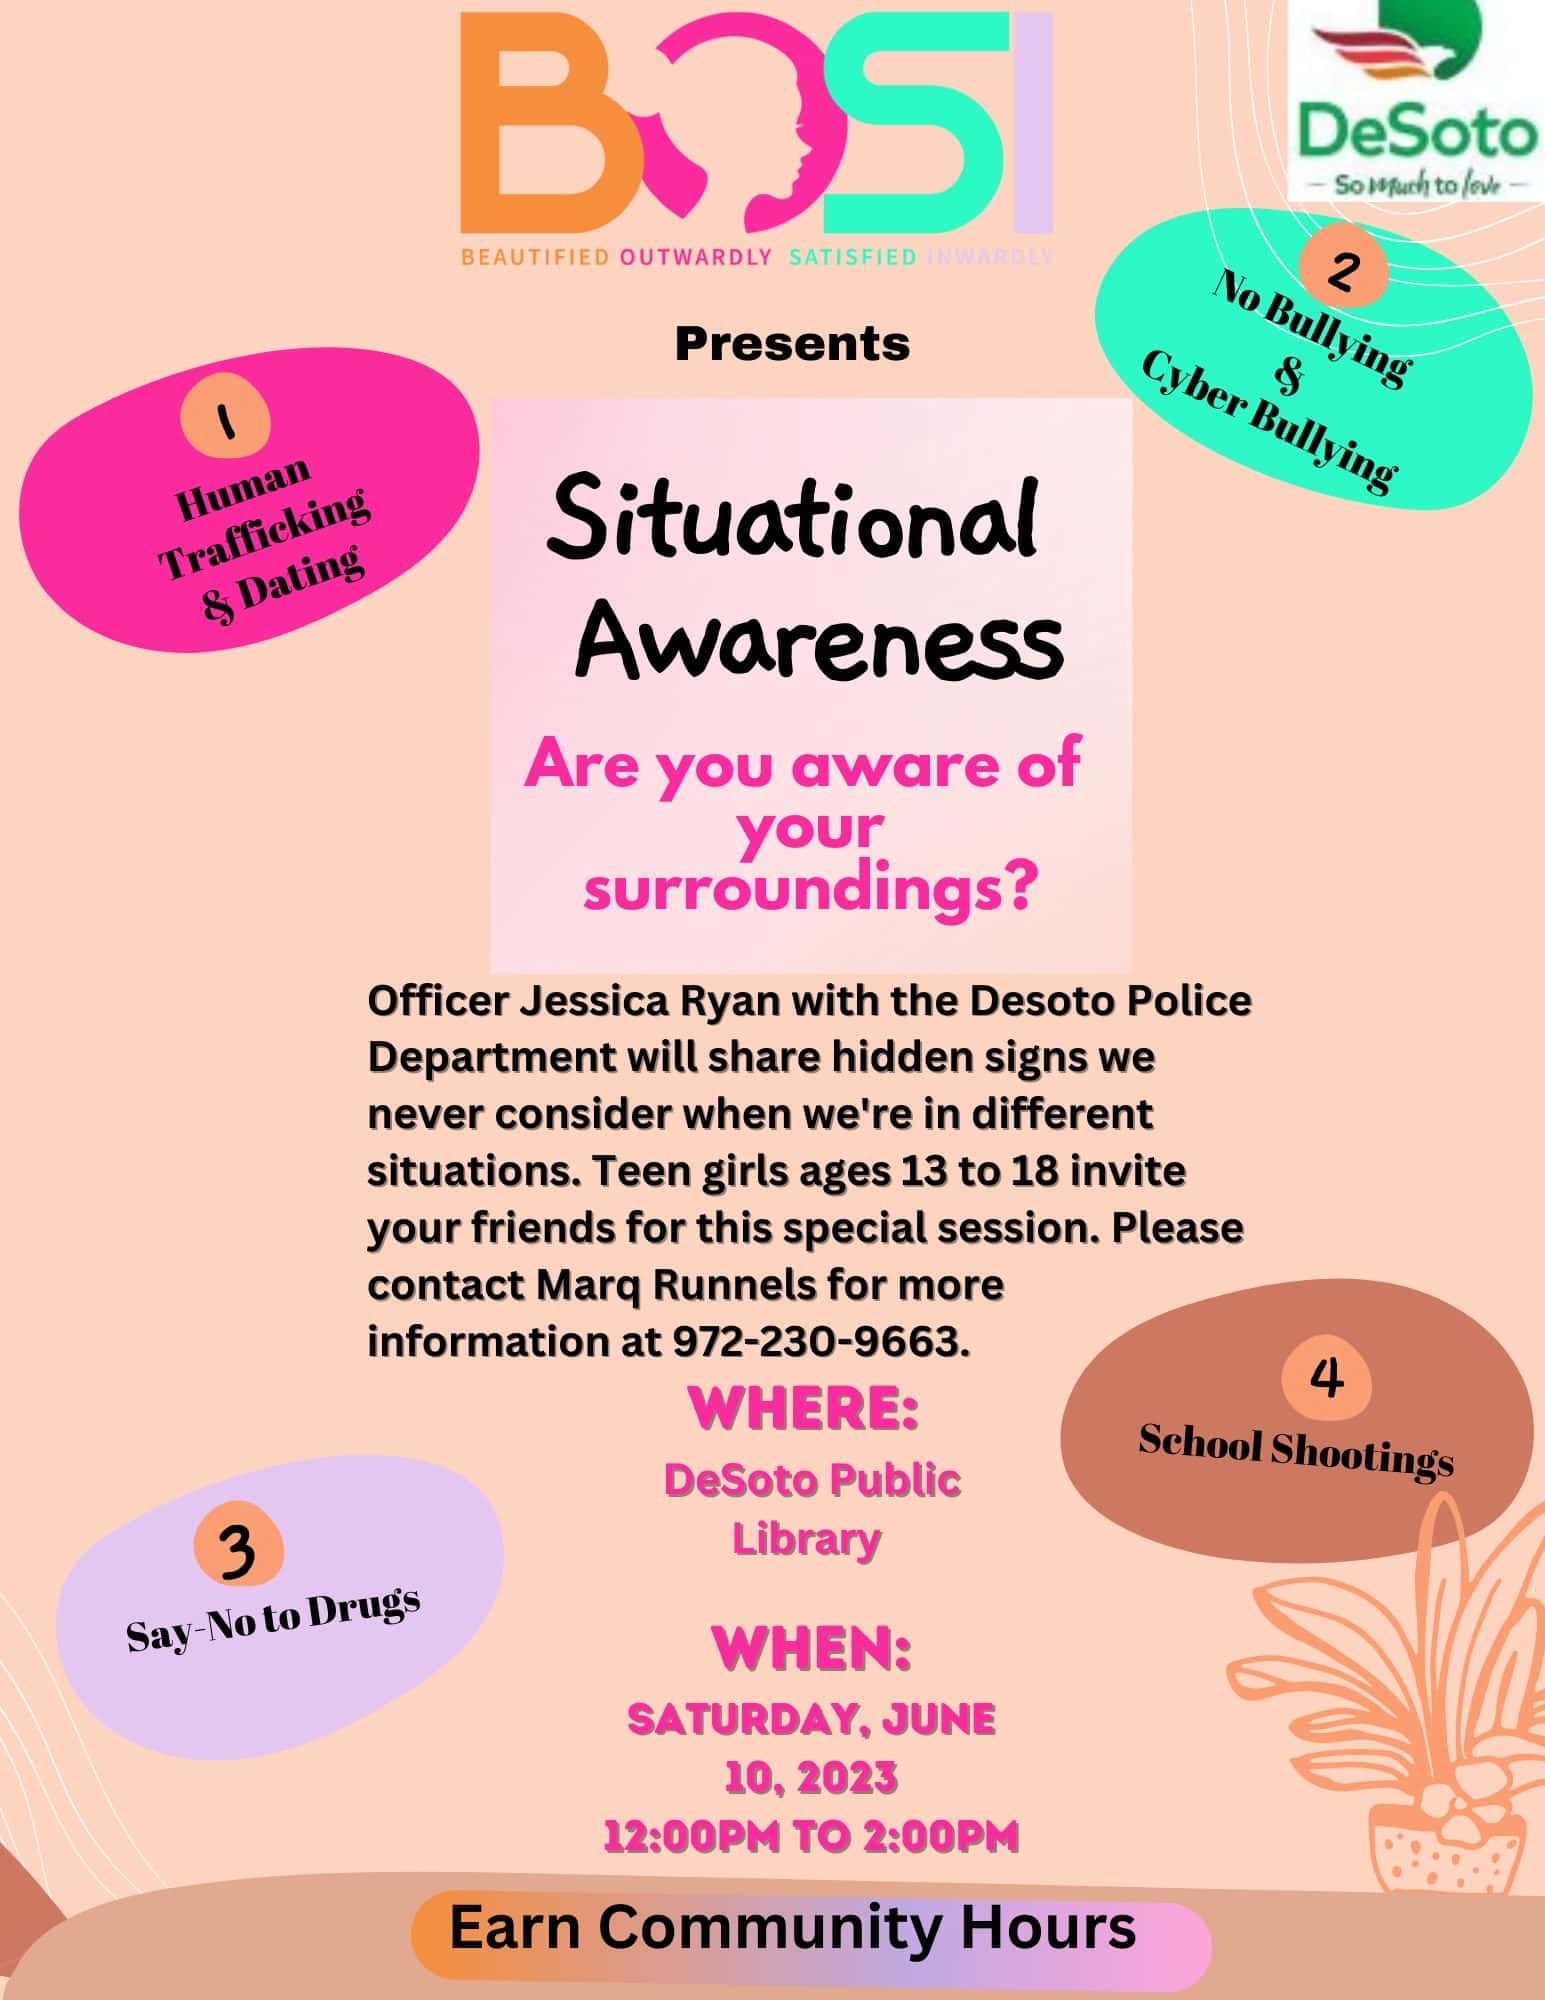 DeSoto Situational Awareness poster